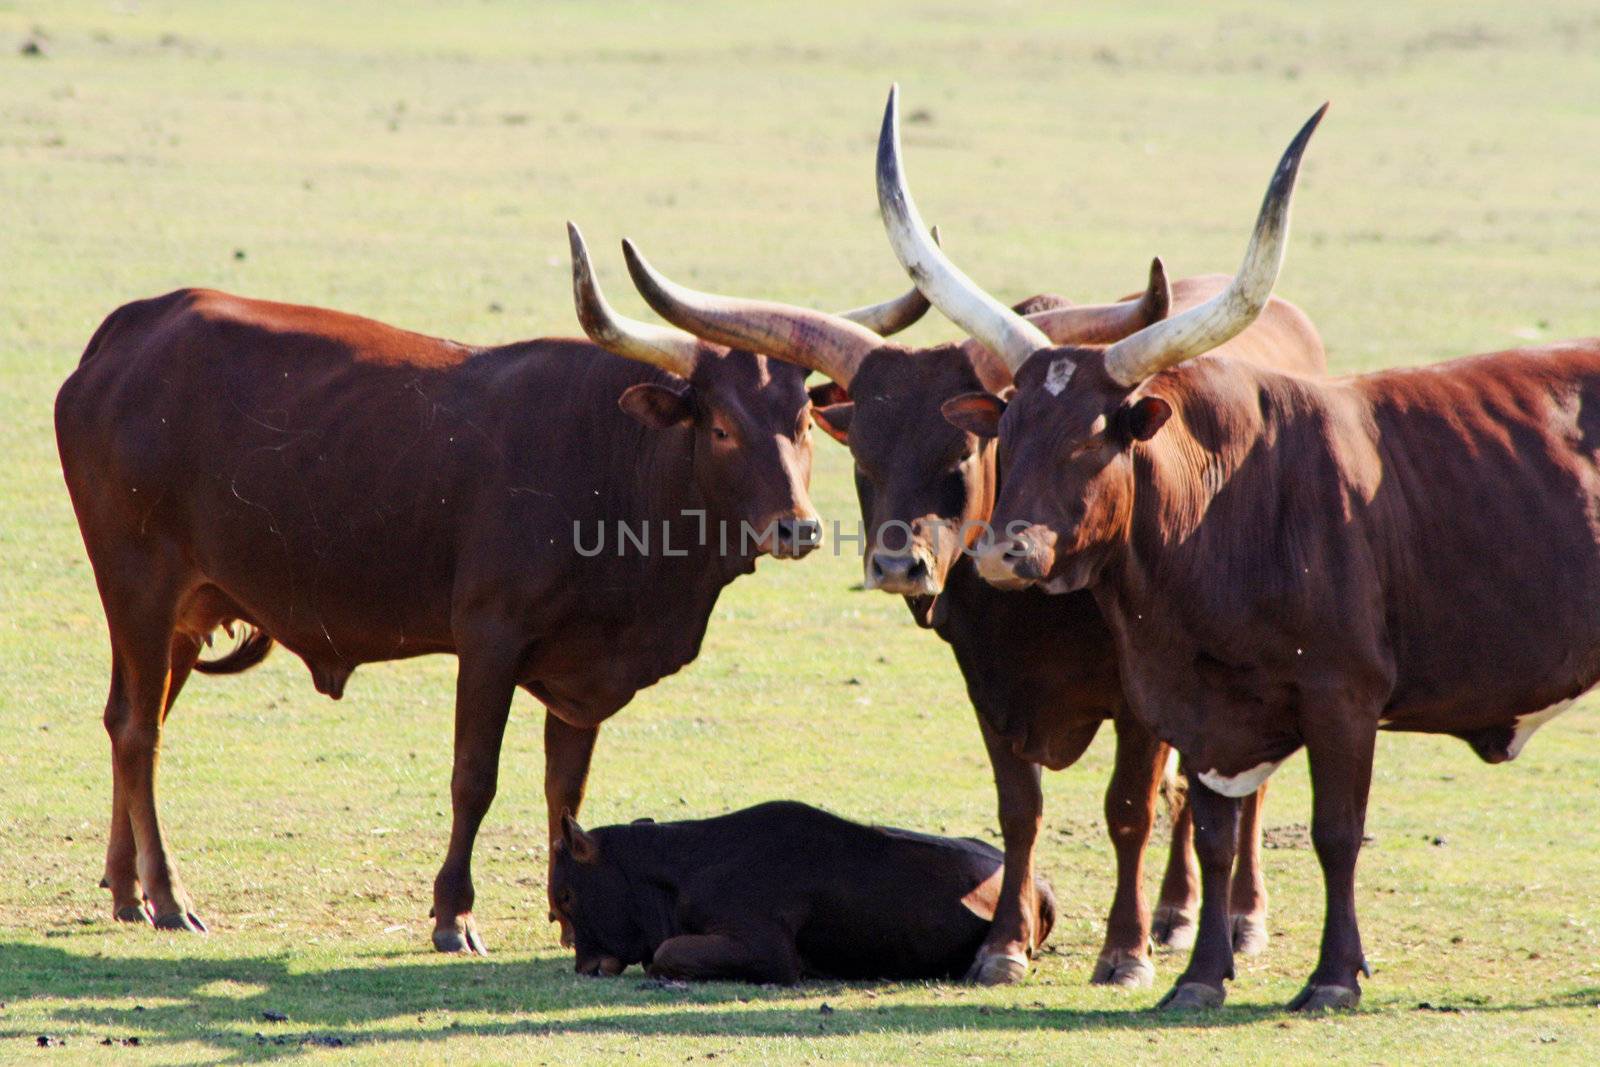 ankole cattle by lizapixels